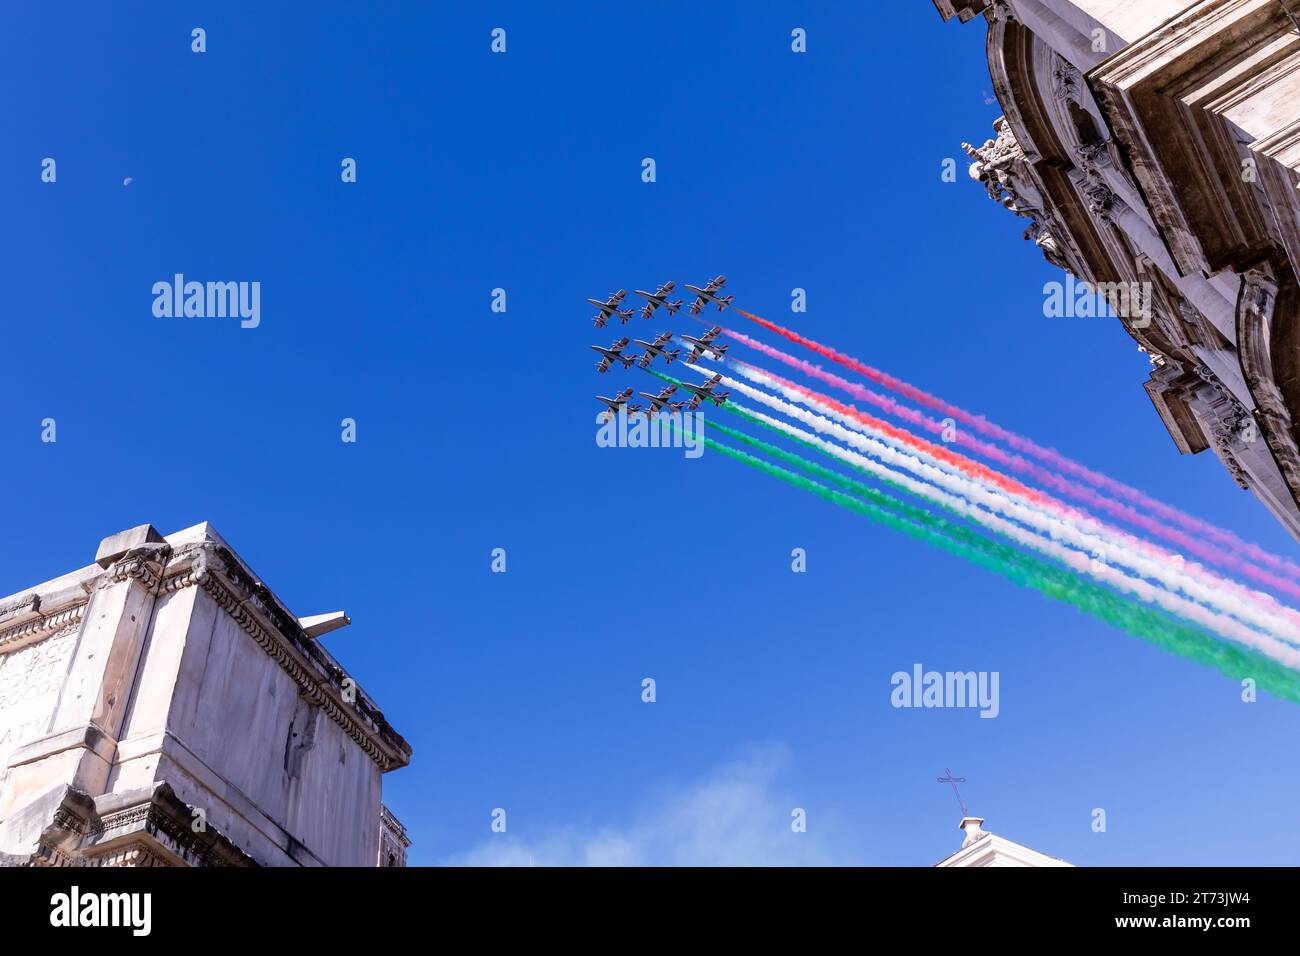 Frecce Tricolori flying over Rome, Rome, Lazio, Italy Stock Photo